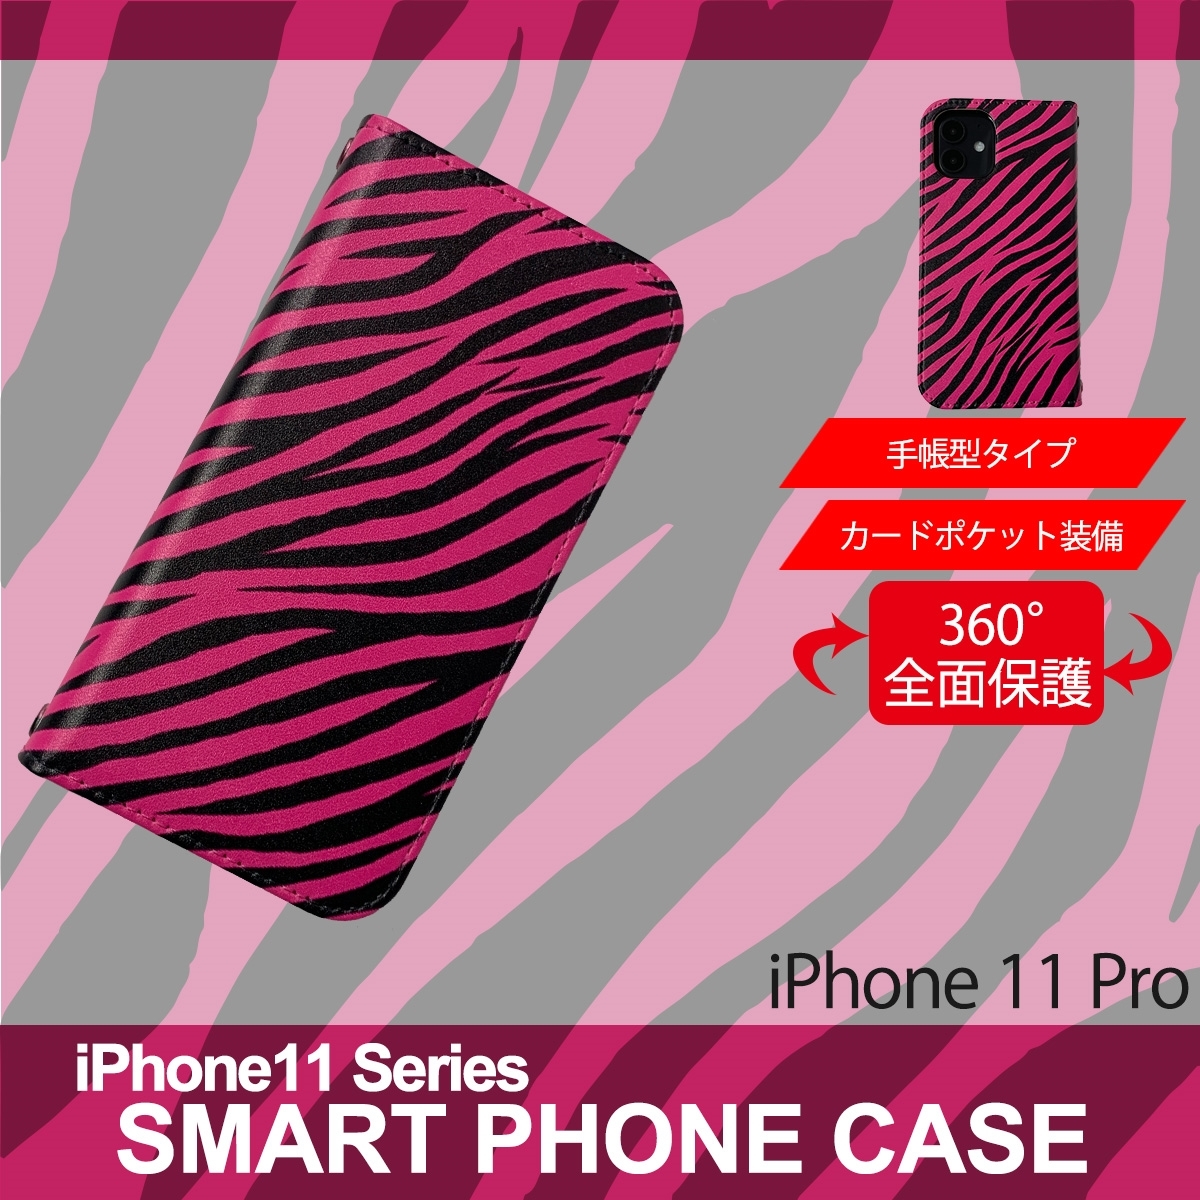 1】 iPhone11 Pro 手帳型 アイフォン ケース スマホカバー PVC レザー ゼブラ柄 ピンク